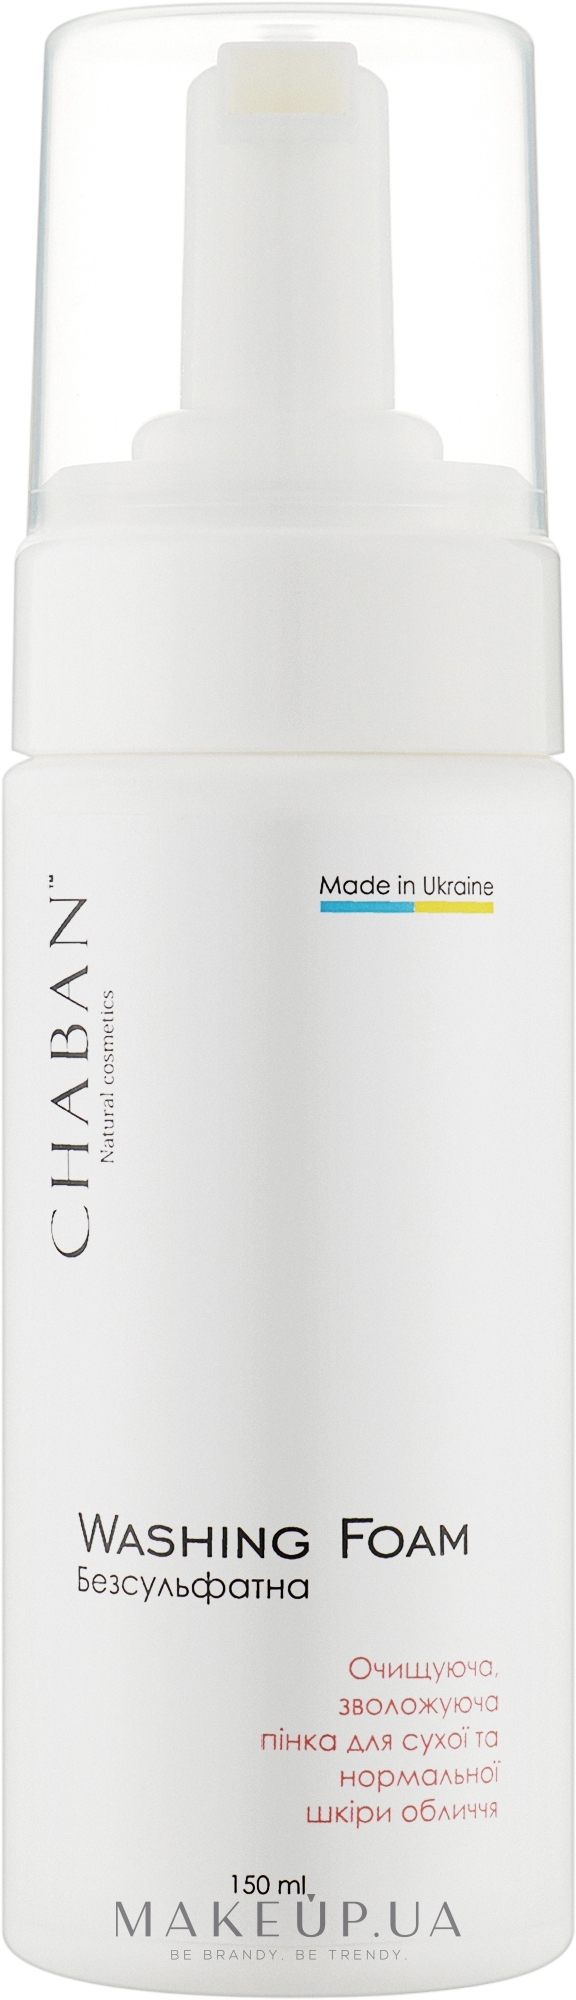 Очищающая, увлажняющая пенка для сухой и нормальной кожи лица - Chaban Natural Cosmetics Washing Foam — фото 150ml